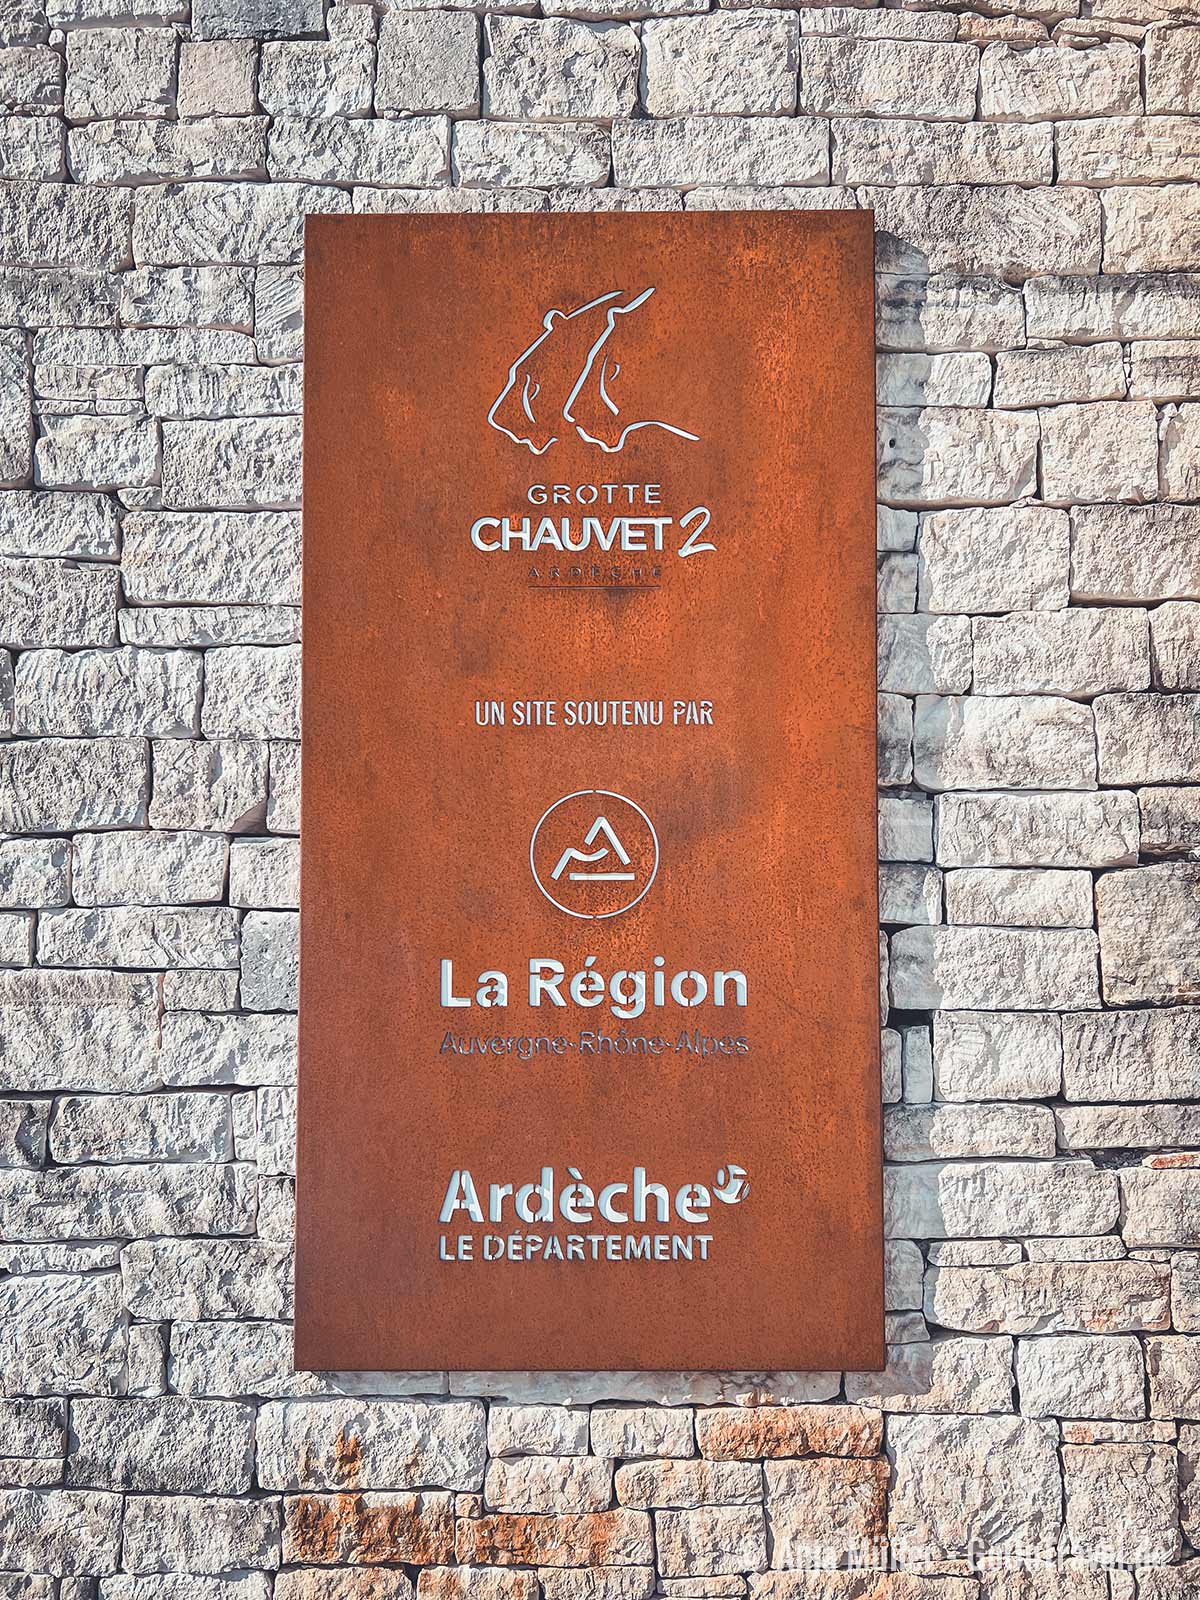 Eine der bedeutesten Sehenswürdigkeiten in der Ardèche